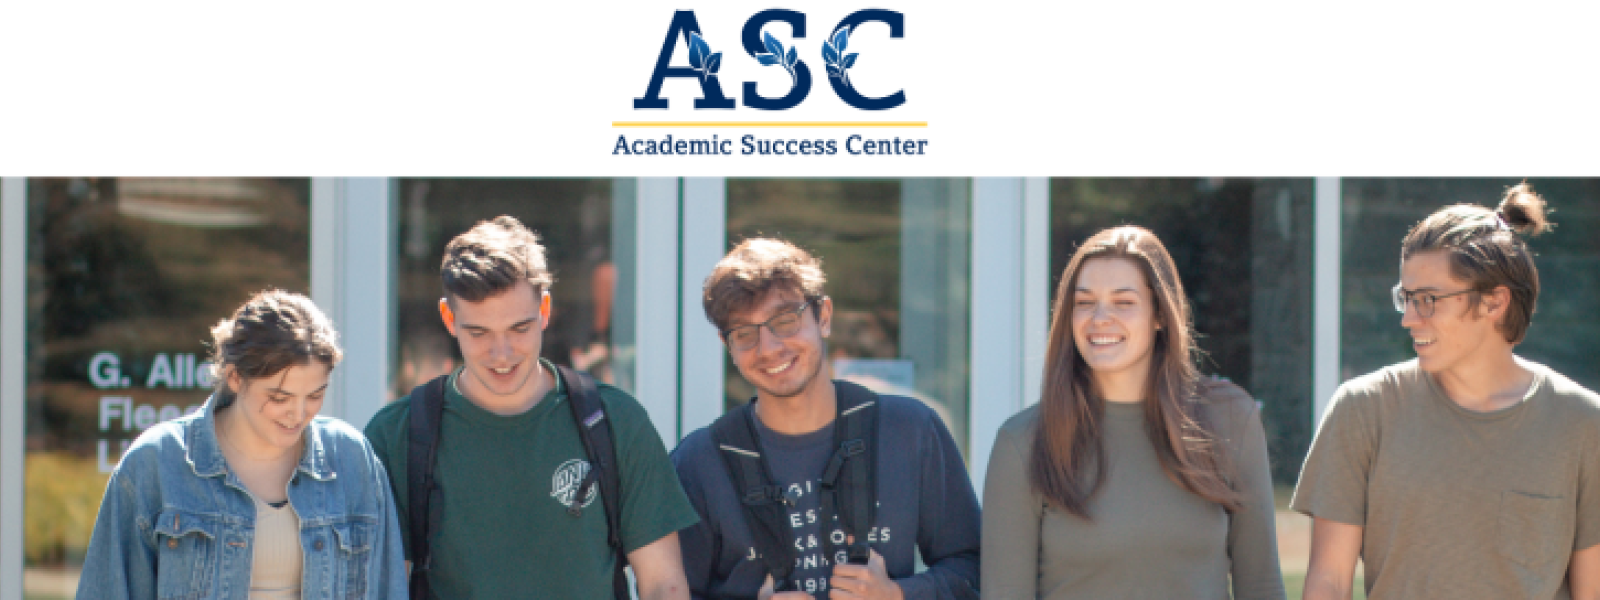 Academic Success Center